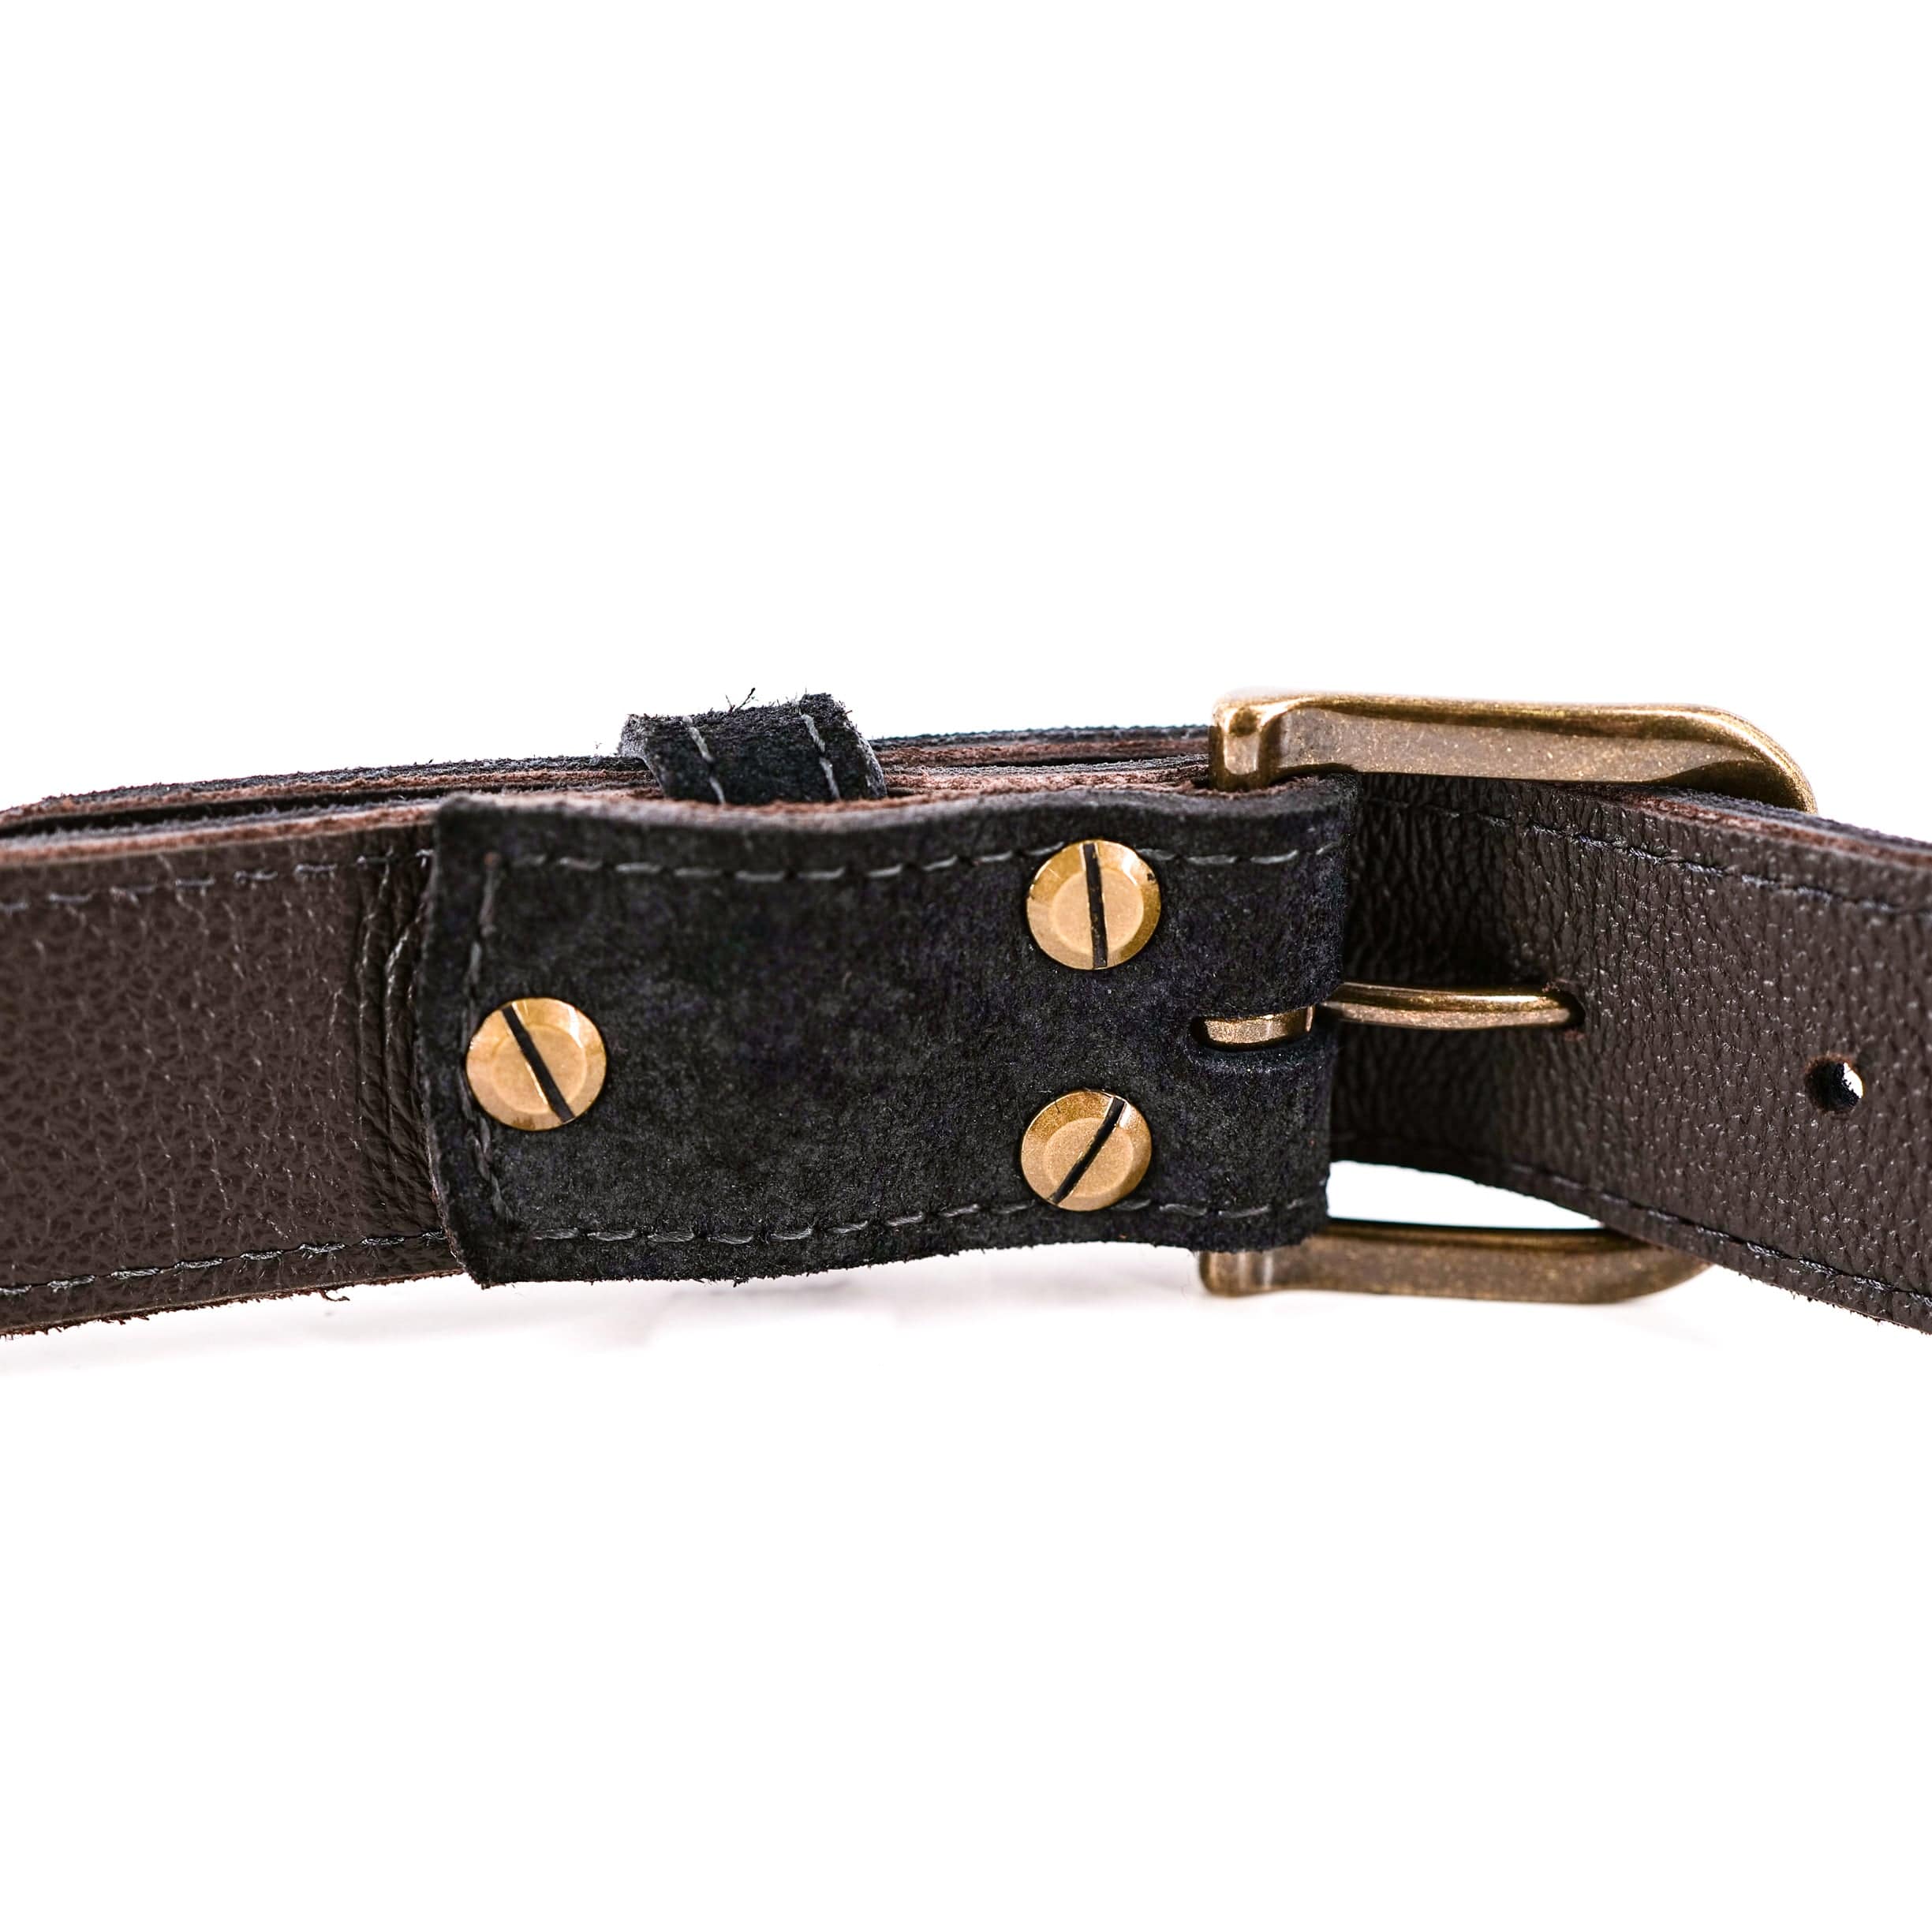 Trusador Men's Ferrara Ratchet Belt Fully Adjustable No Holes